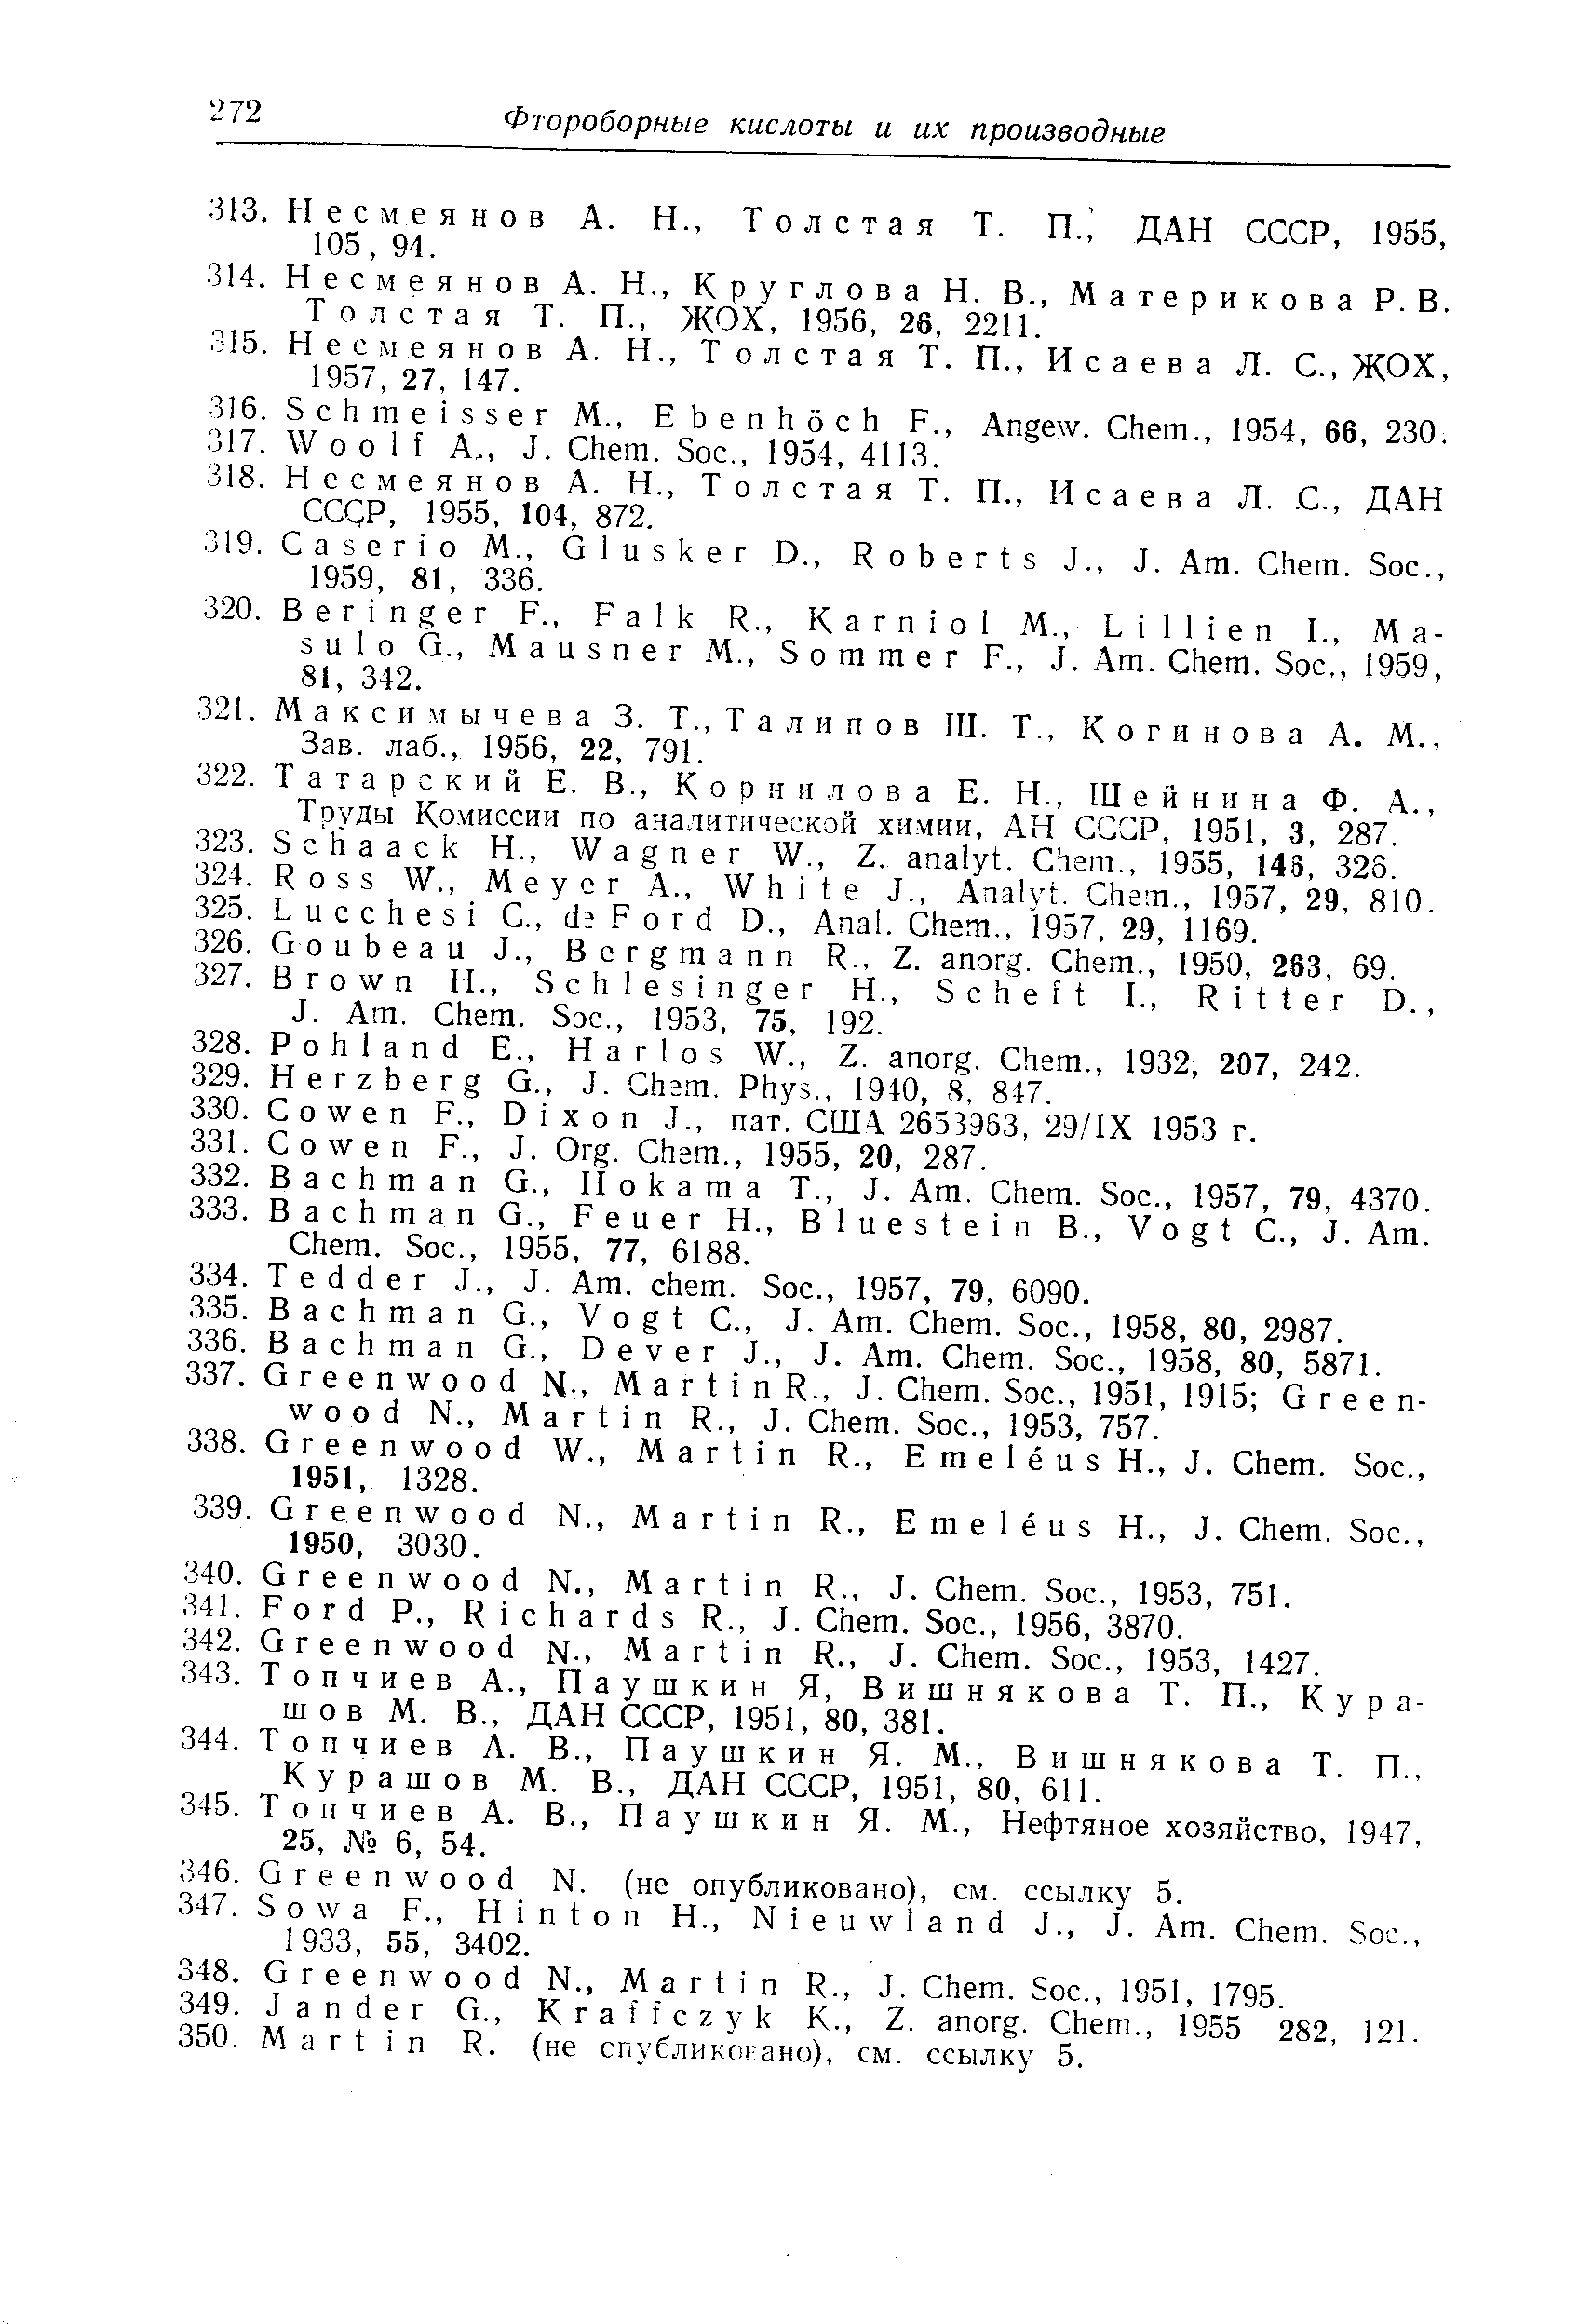 Труды Комиссии по аналитической химии, АН СССР, 1951, 3, 287.